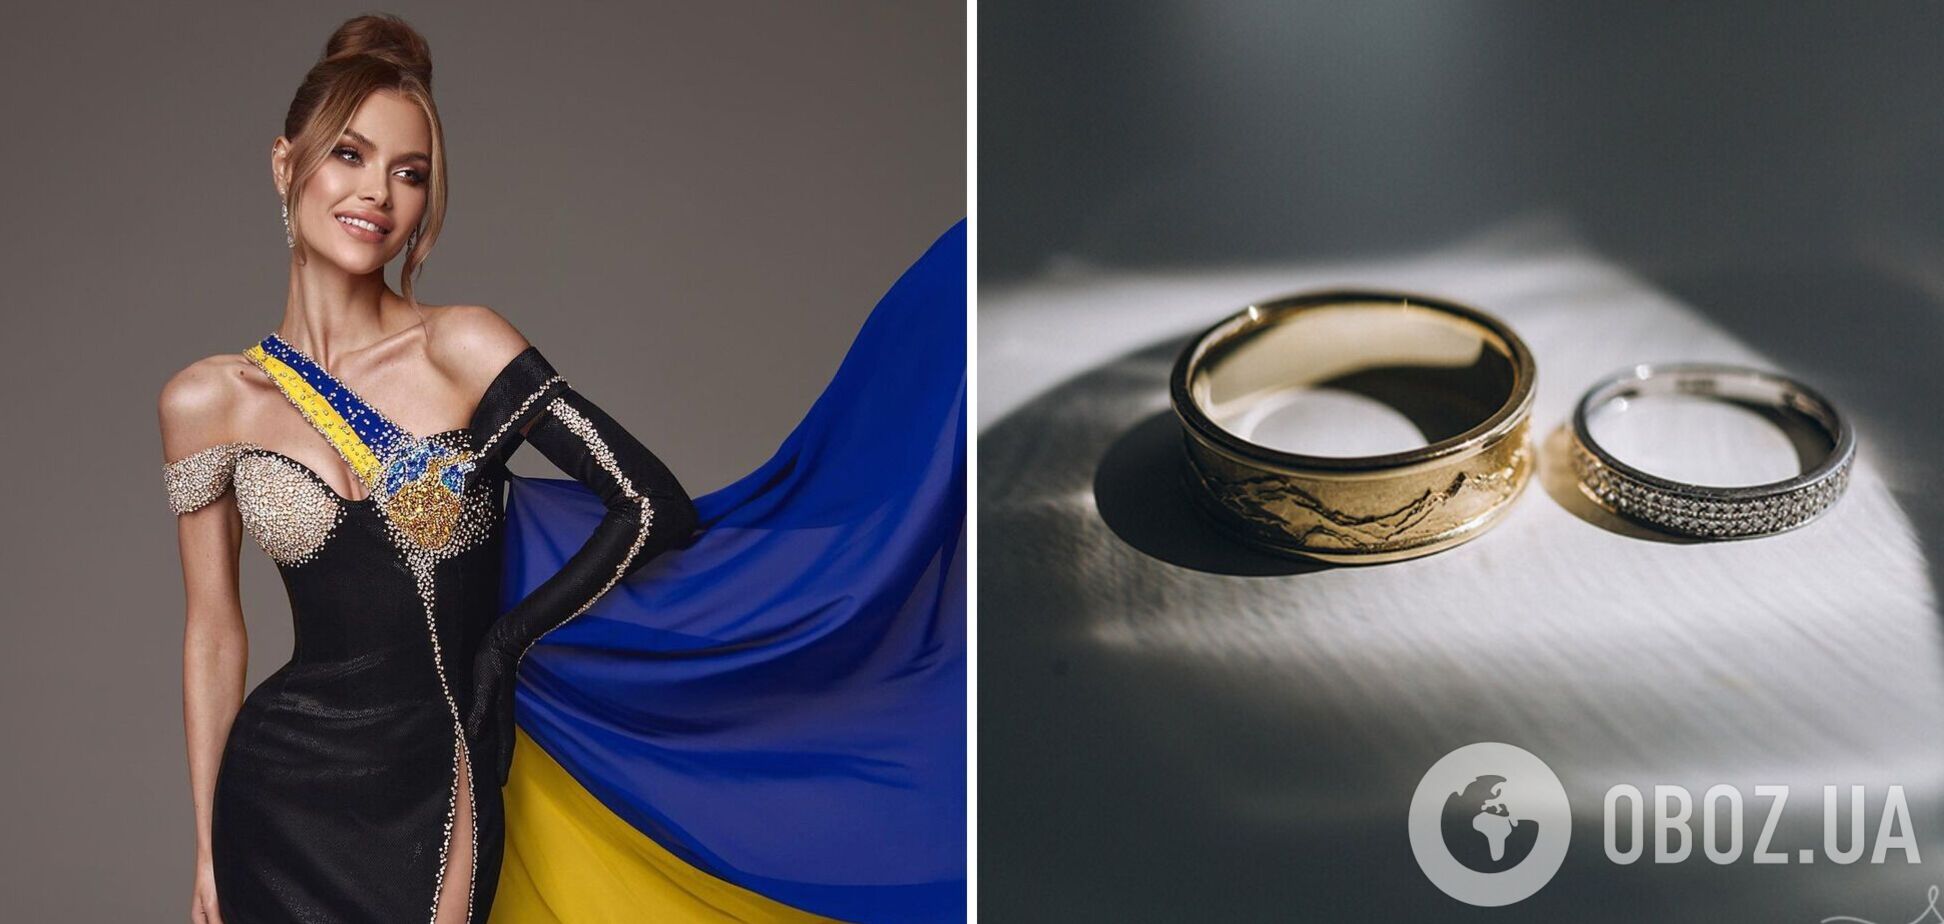 'Мисс Украина Вселенная' Виктория Апанасенко вышла замуж. Фото